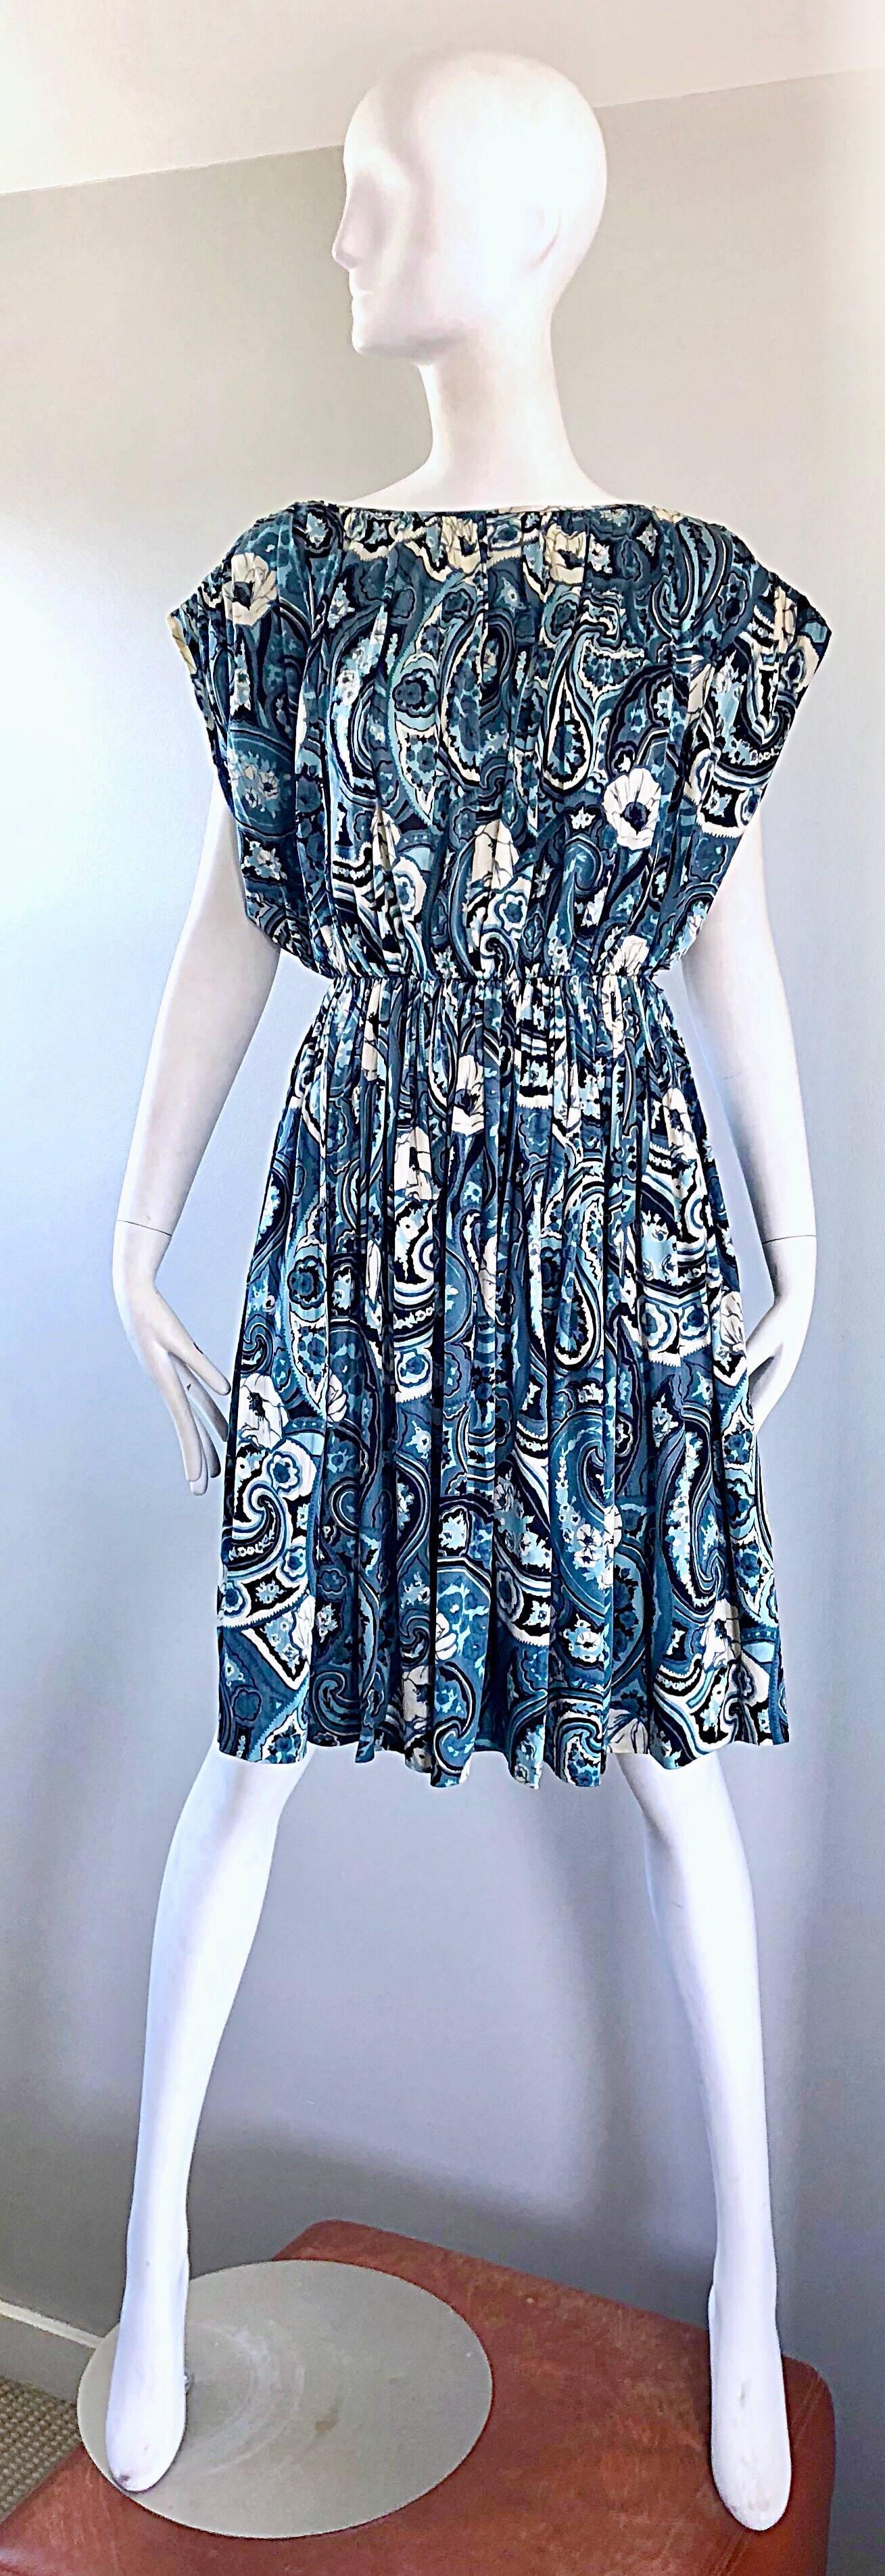 Magnifique et rare robe en soie Avant Garde TOWNLEY for NEIMAN MARCUS bleu et blanc à imprimé floral paisley, datant de la fin des années 70 ! Alors que Townley était reconnu comme le fabricant de Claire McCardell, le label Townley solo n'a existé